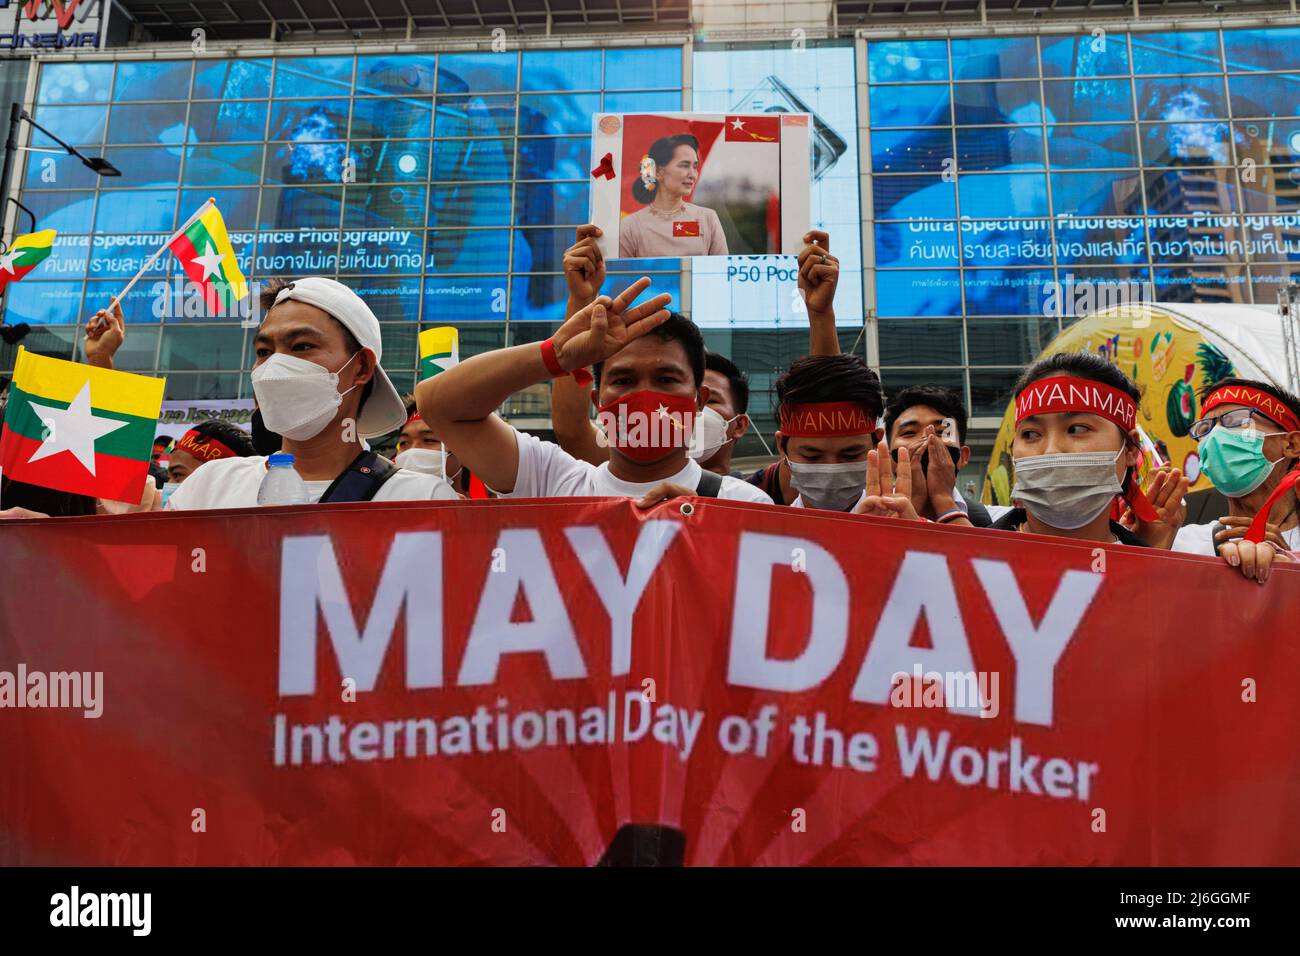 Während der Demonstration halten die Demonstranten in Myanmar ein Transparent. Die Arbeitergewerkschaft veranstaltete am Tag der Arbeit in Bangkok, Thailand, eine Parade. An der Parade nahmen verschiedene Gruppen Teil, darunter die thailändische Arbeitergruppe, die myanmarische Arbeitergruppe und die pro-demokratische Gruppe. Sie versammelten sich an der Ratchaprosong Road und marschierten dann zur Kreuzung Pathumwan, Demonstranten forderten Wohlfahrt, faire Zinszahlungen und auch Demokratie (einschließlich Thailand und Myanmar). Stockfoto